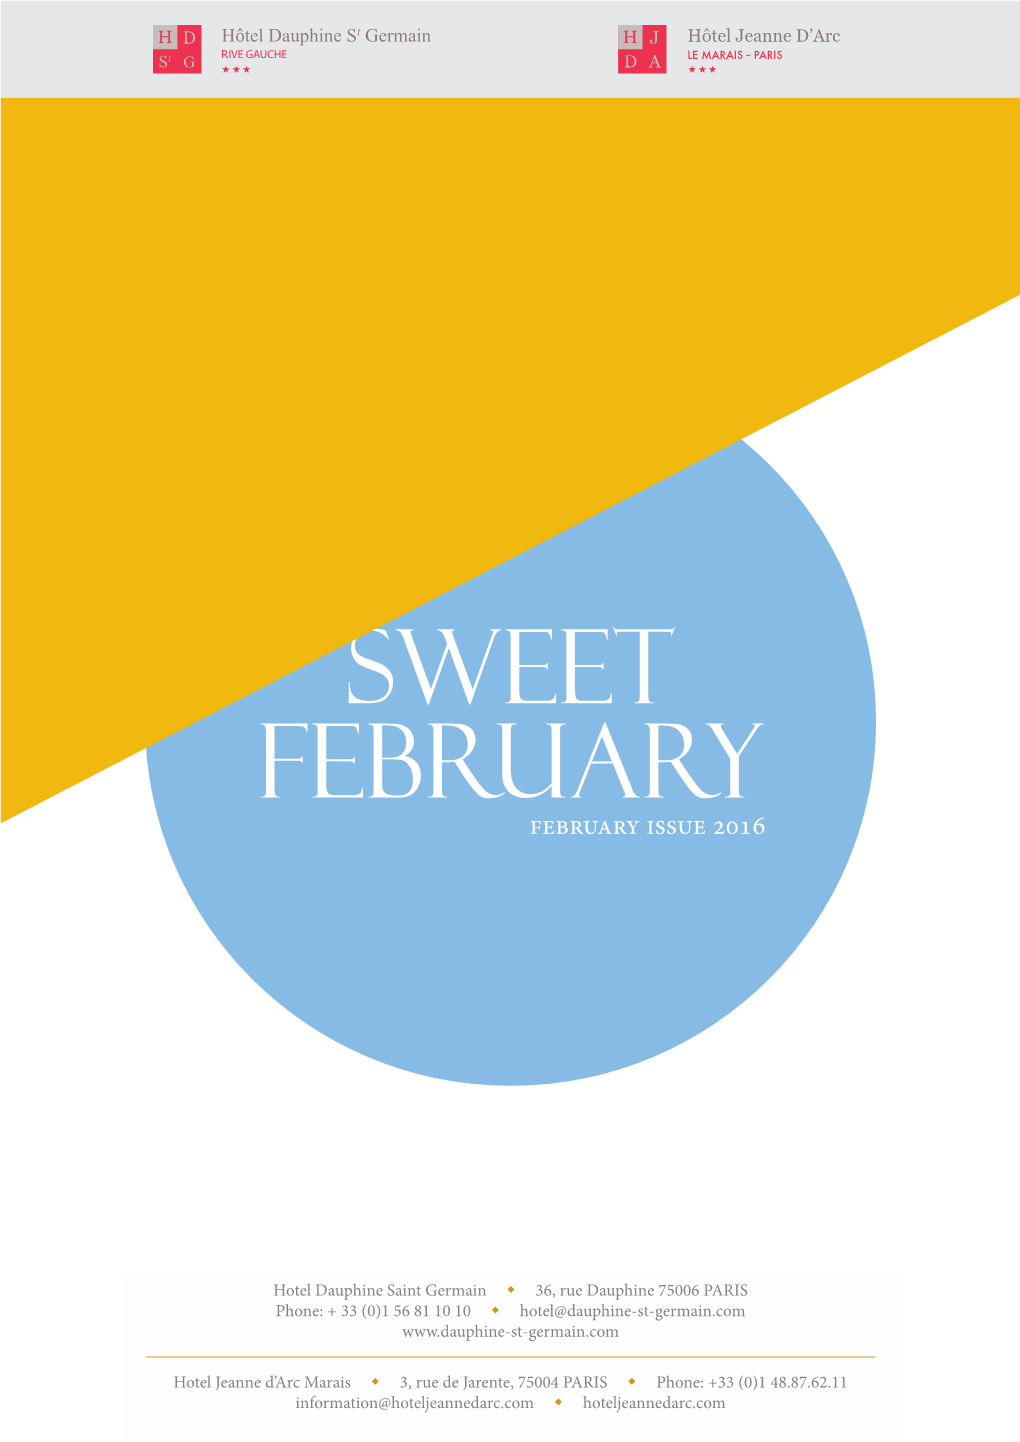 Sweet February February Issue 2016